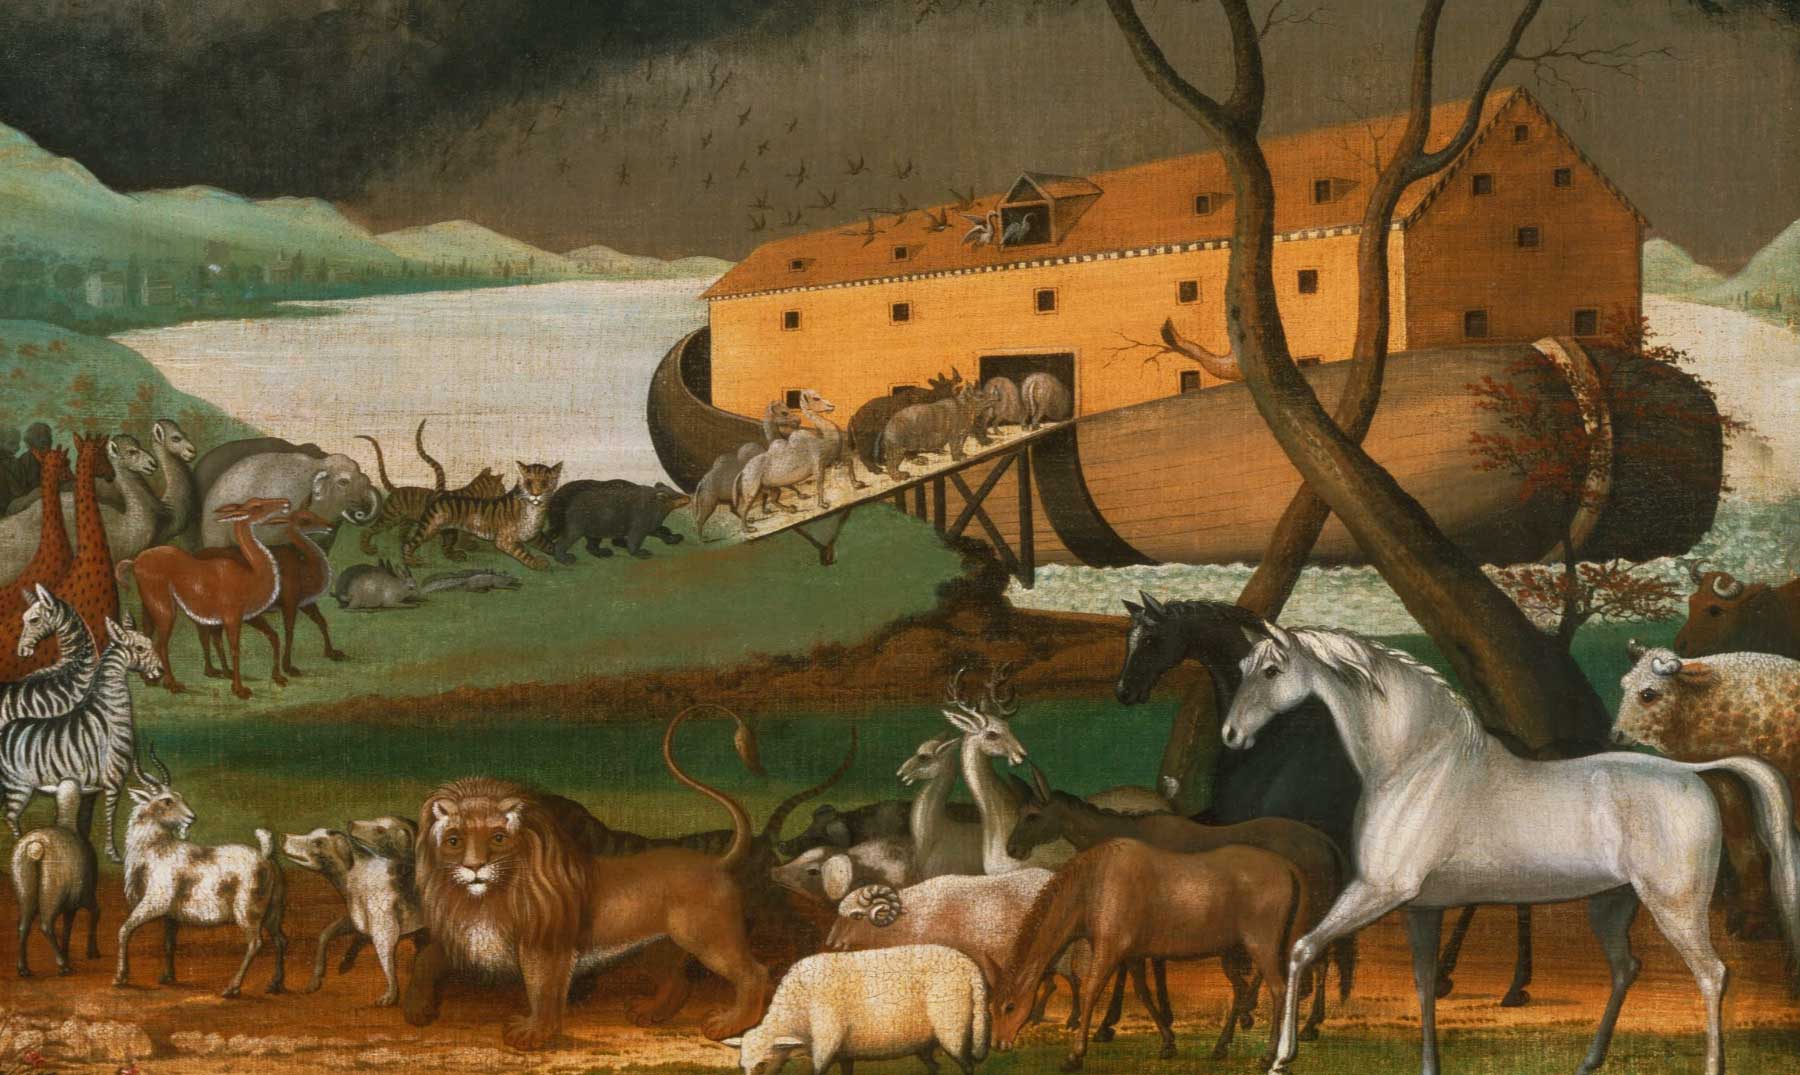 El Arca de Noé y el Desengrasante El Milagrito, más de 40 años juntos.